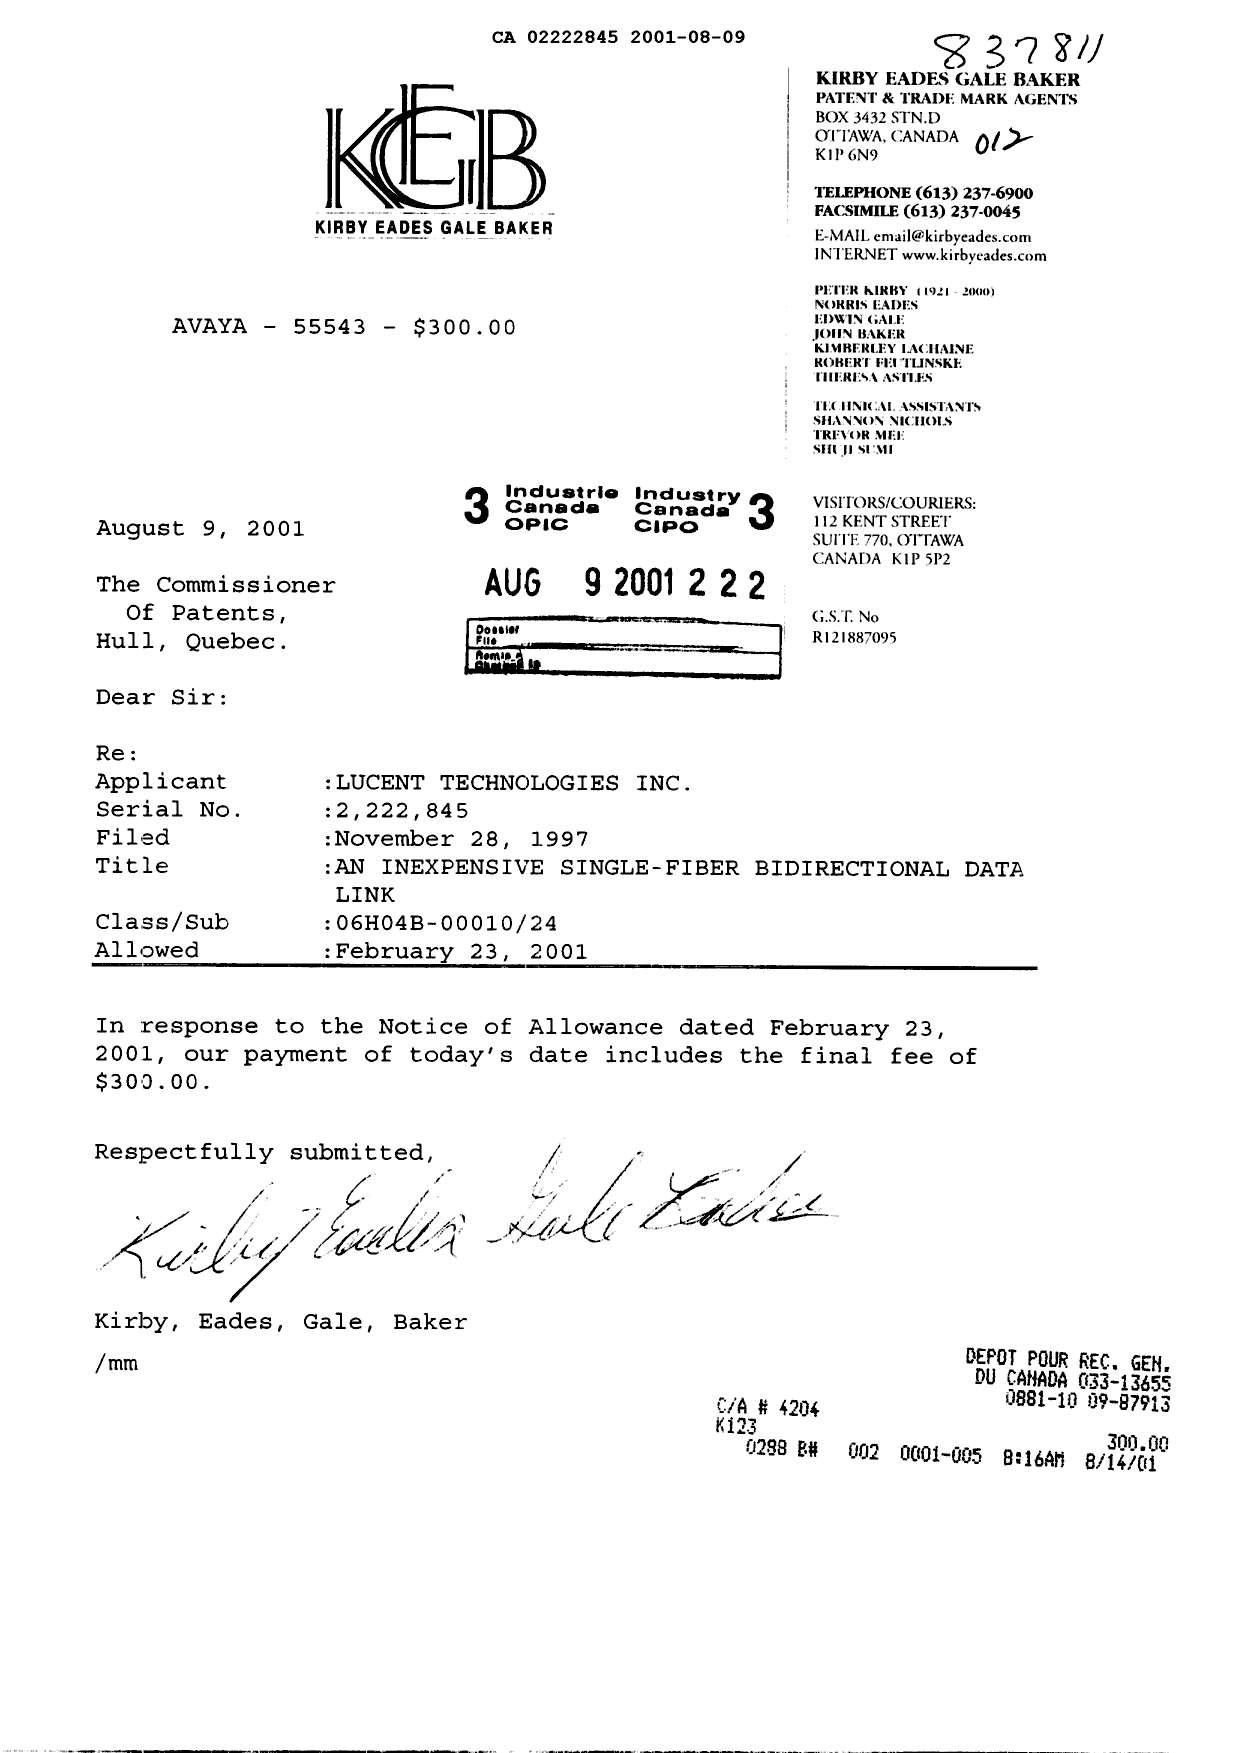 Document de brevet canadien 2222845. Correspondance 20010809. Image 1 de 1